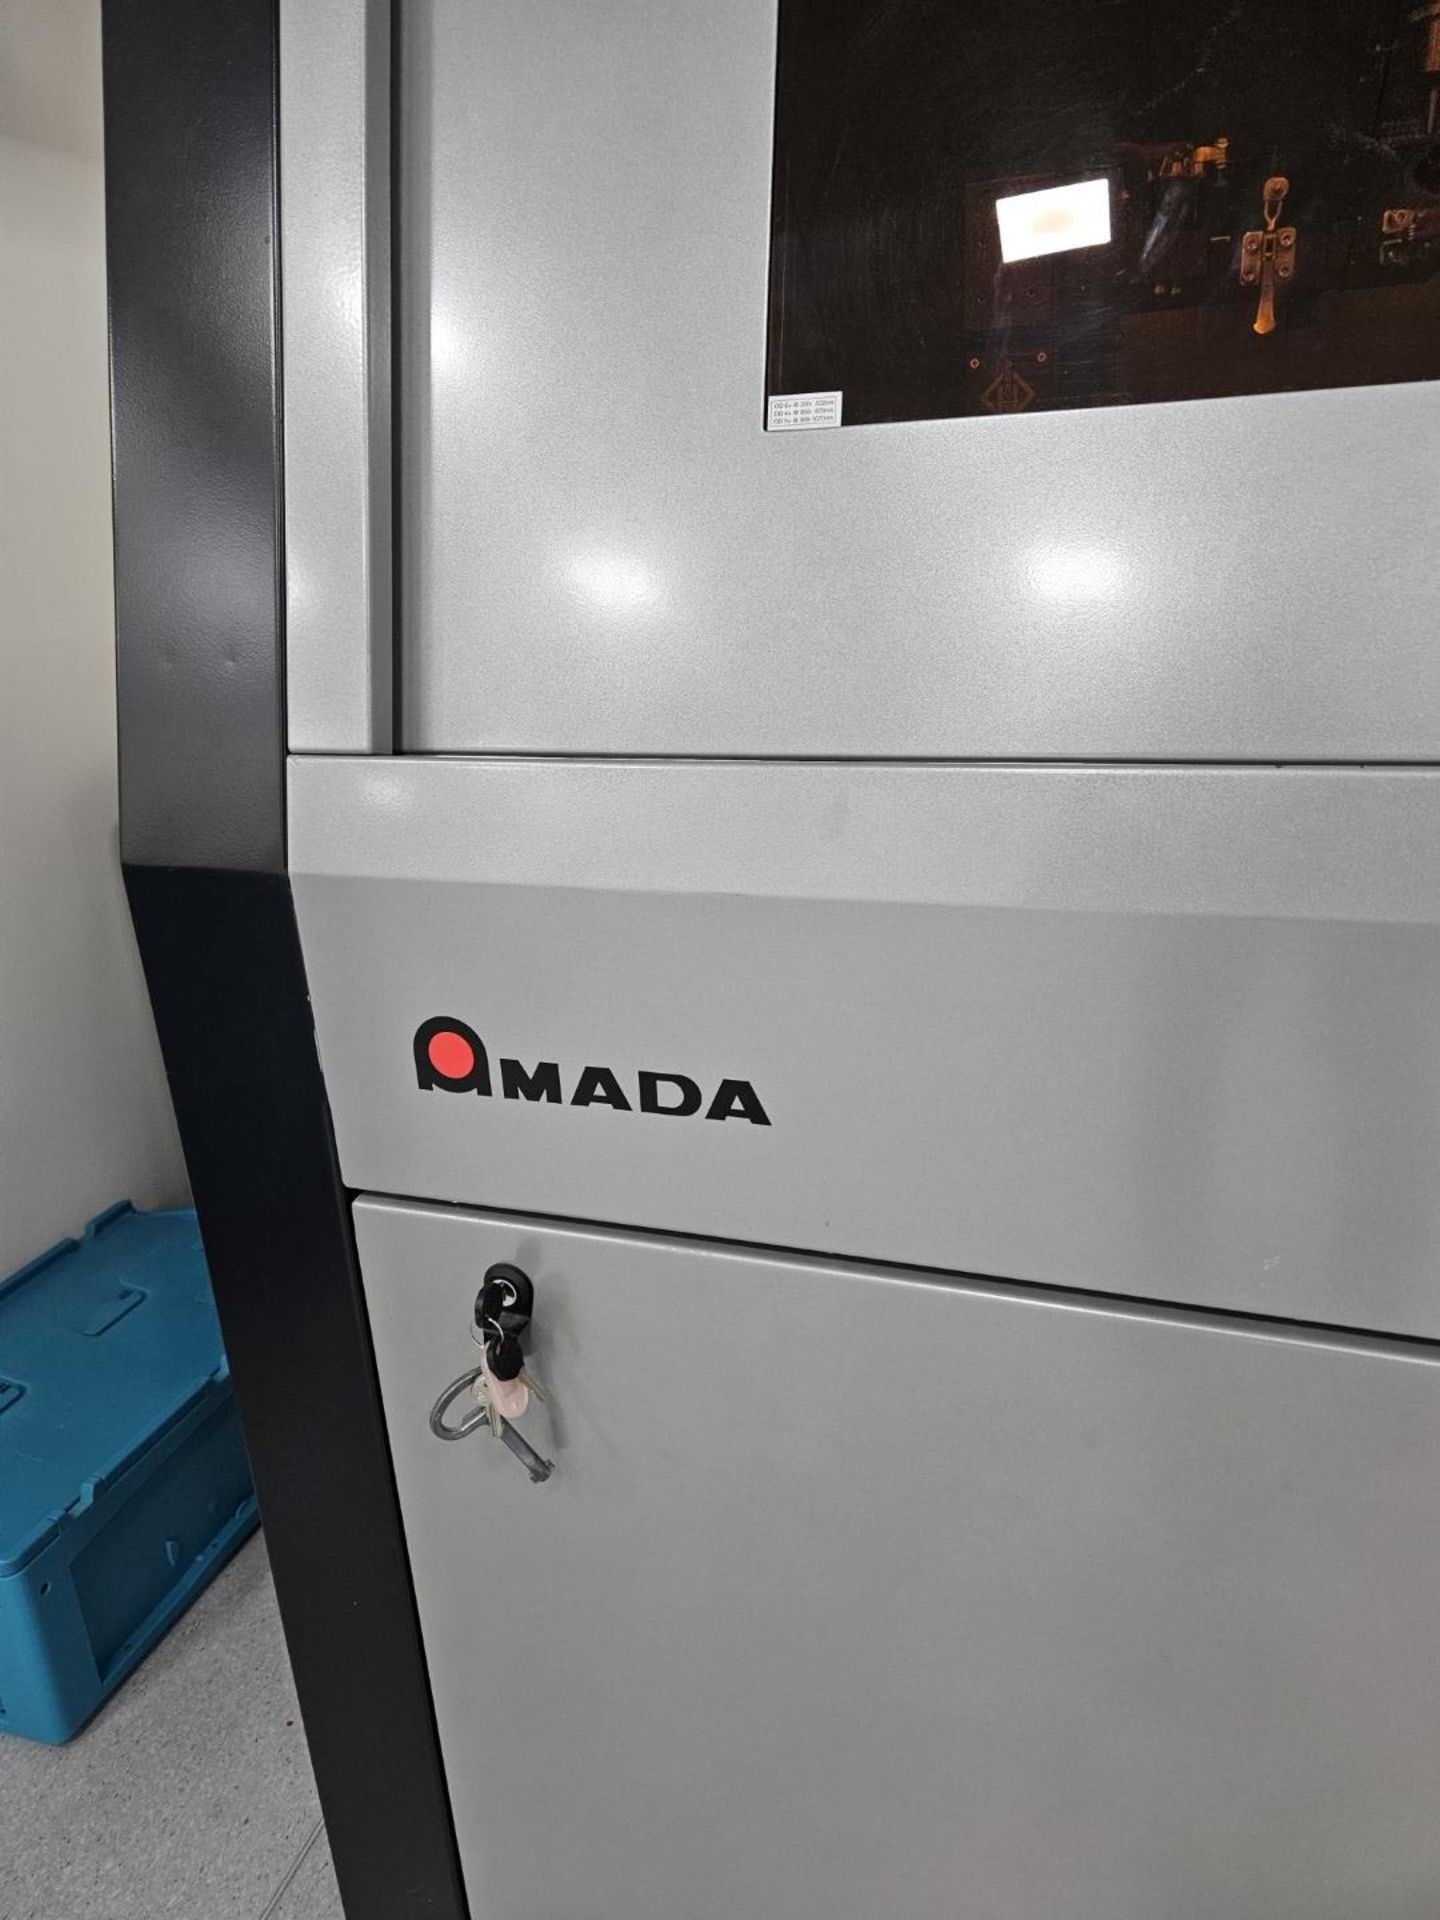 1 x Amada Miyachi Nova 6 Laser CNC Welding Workstation System - Type: 68M0095 - Year: 2016 - Image 3 of 17